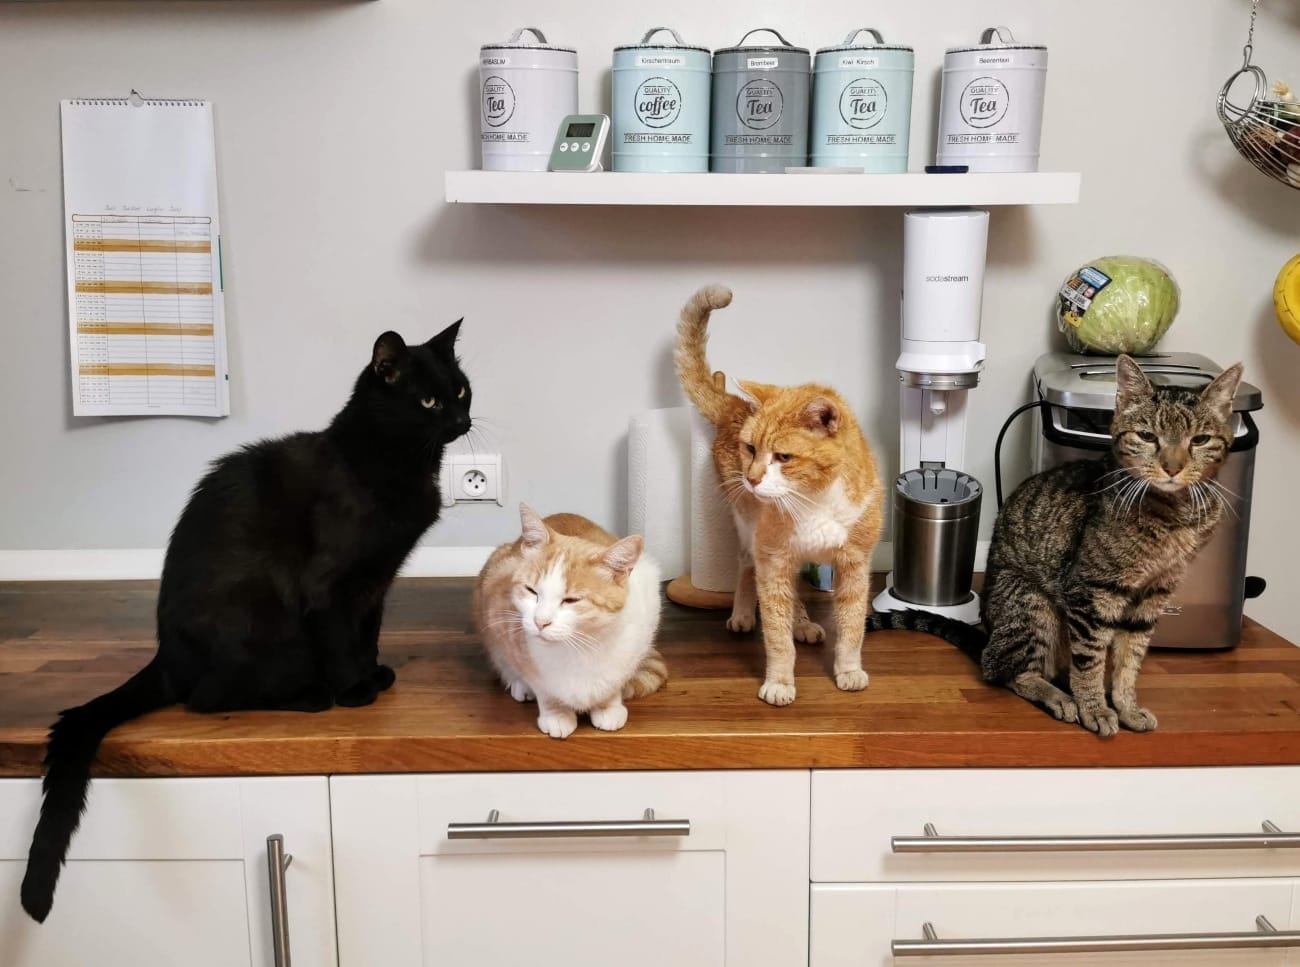 multi-cat households